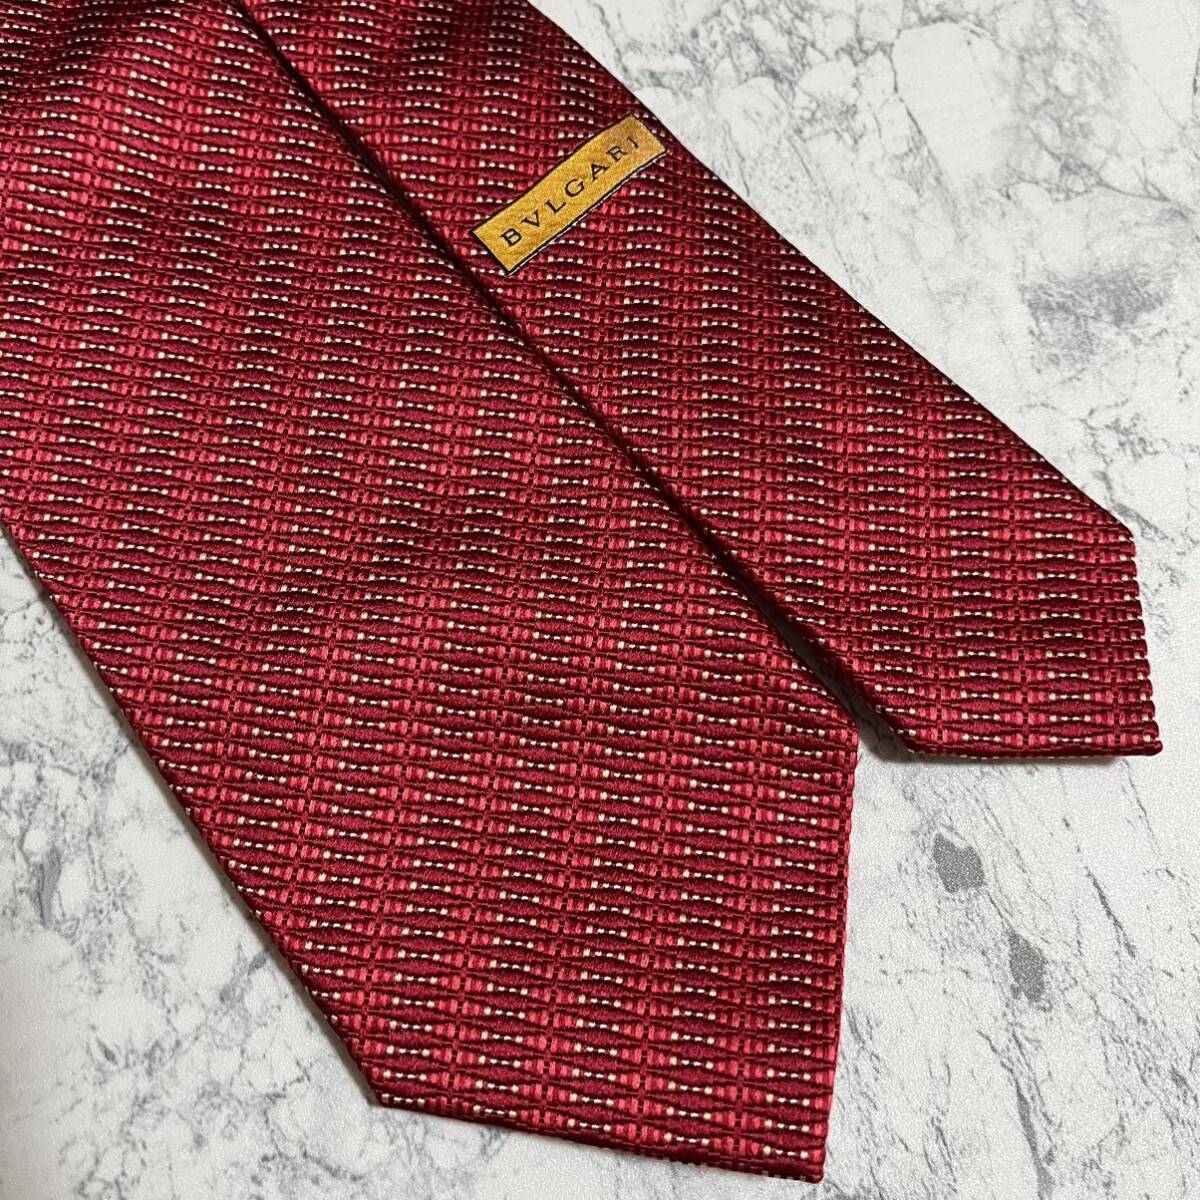 1 иен прекрасный товар BVLGARY BVLGARI отправка в тот же день бренд галстук супер высококлассный деловой костюм общий рисунок шелк шелк высокий бренд красный бордо полоса рисунок 